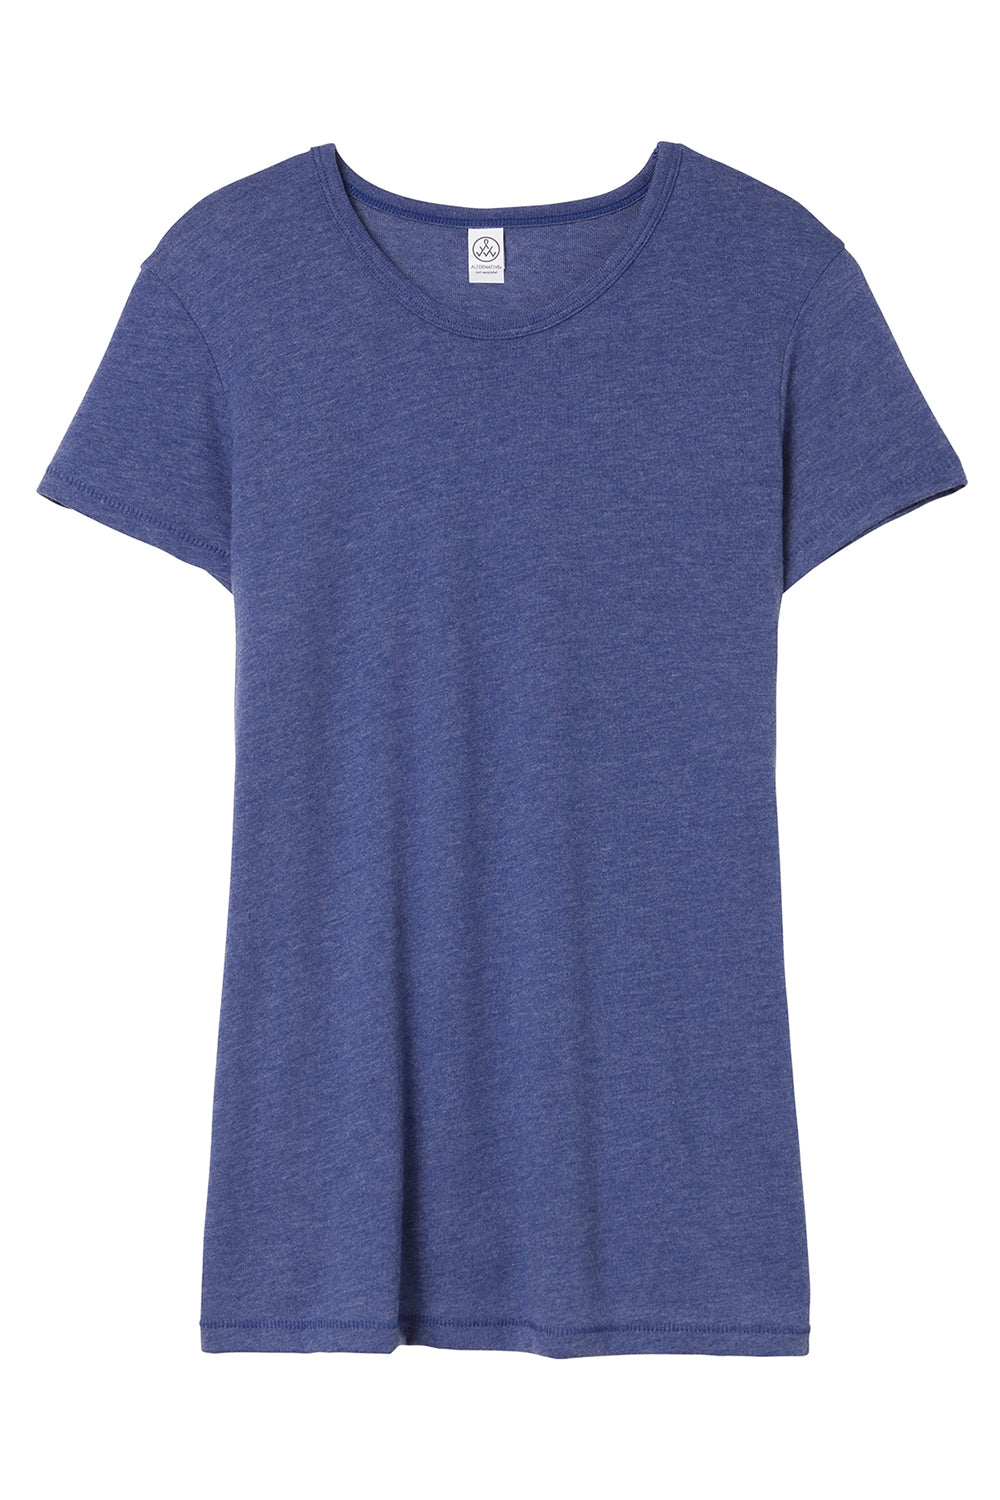 Alternative AA5052/05052BP/5052 Womens Keepsake Vintage Jersey Short Sleeve Crewneck T-Shirt Vintage Royal Blue Flat Front